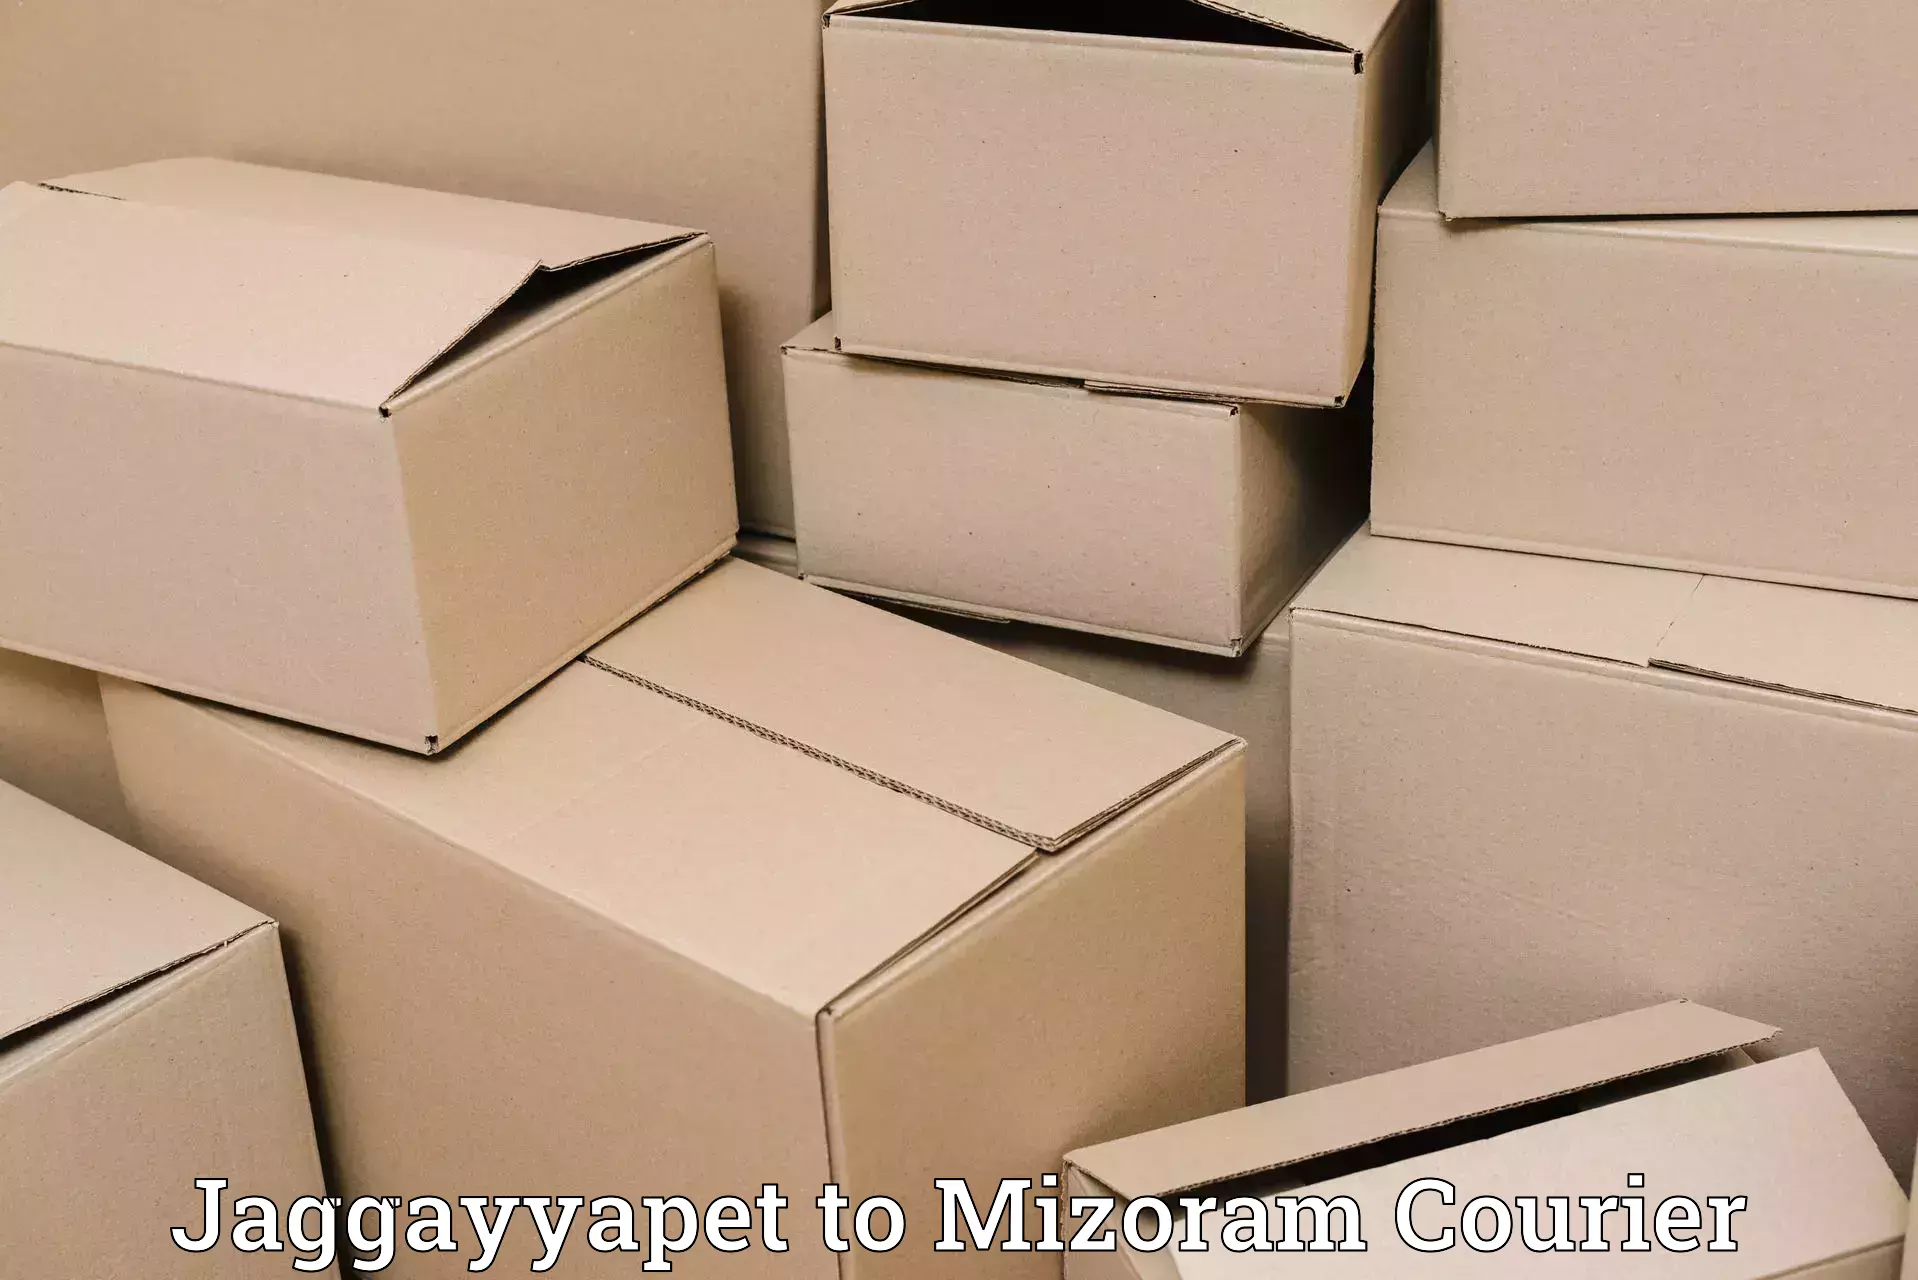 Tech-enabled shipping Jaggayyapet to Mizoram